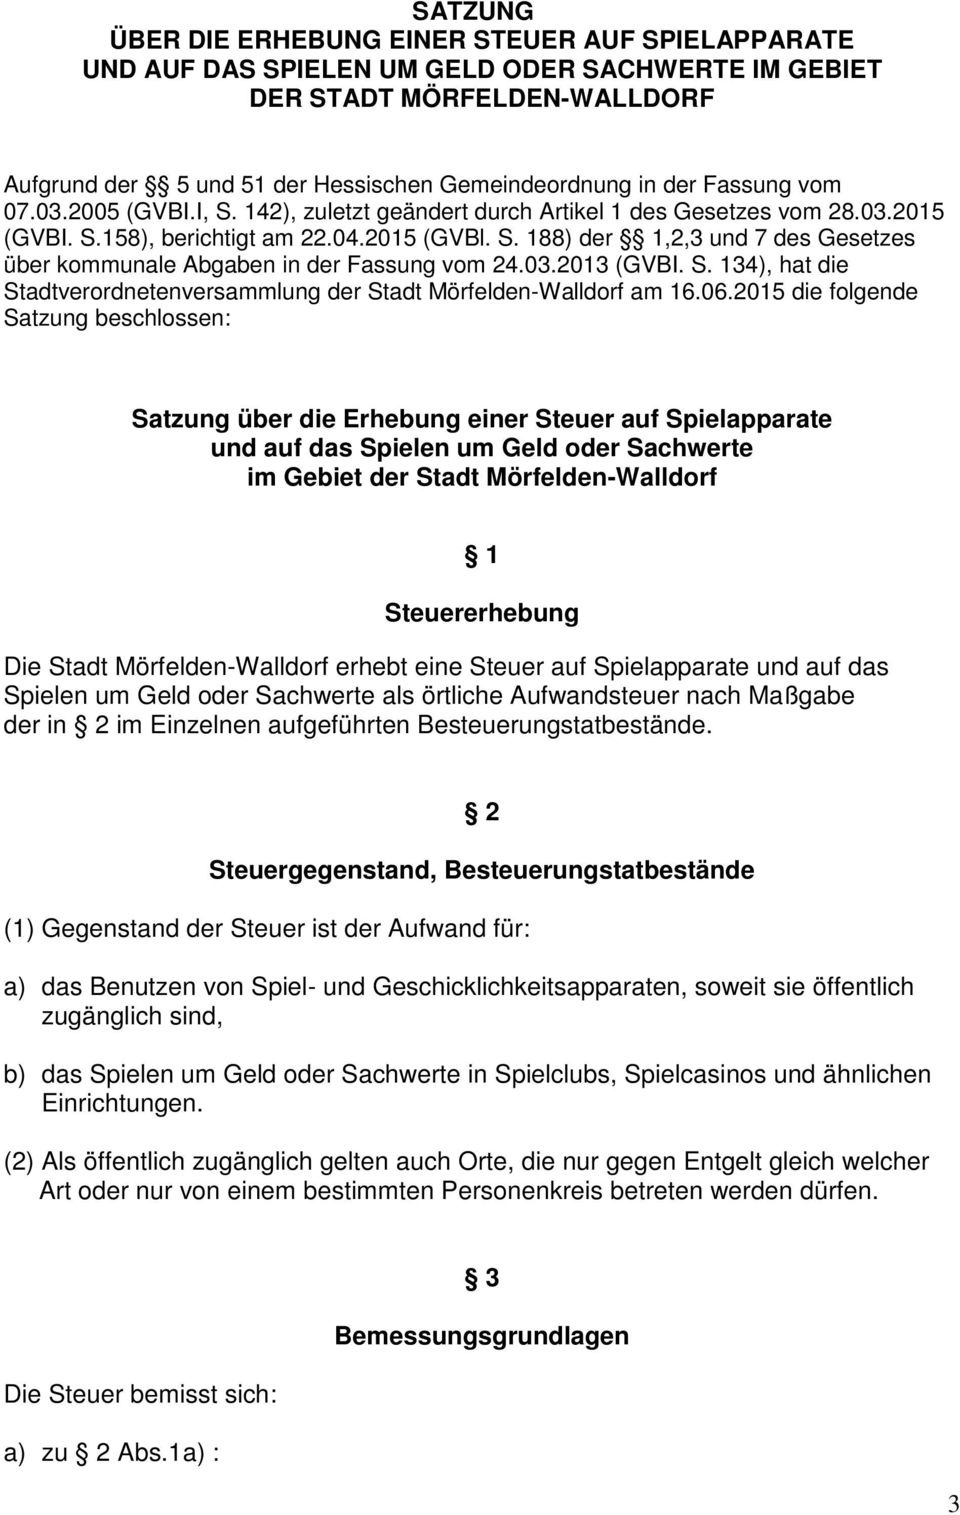 03.2013 (GVBI. S. 134), hat die Stadtverordnetenversammlung der Stadt Mörfelden-Walldorf am 16.06.